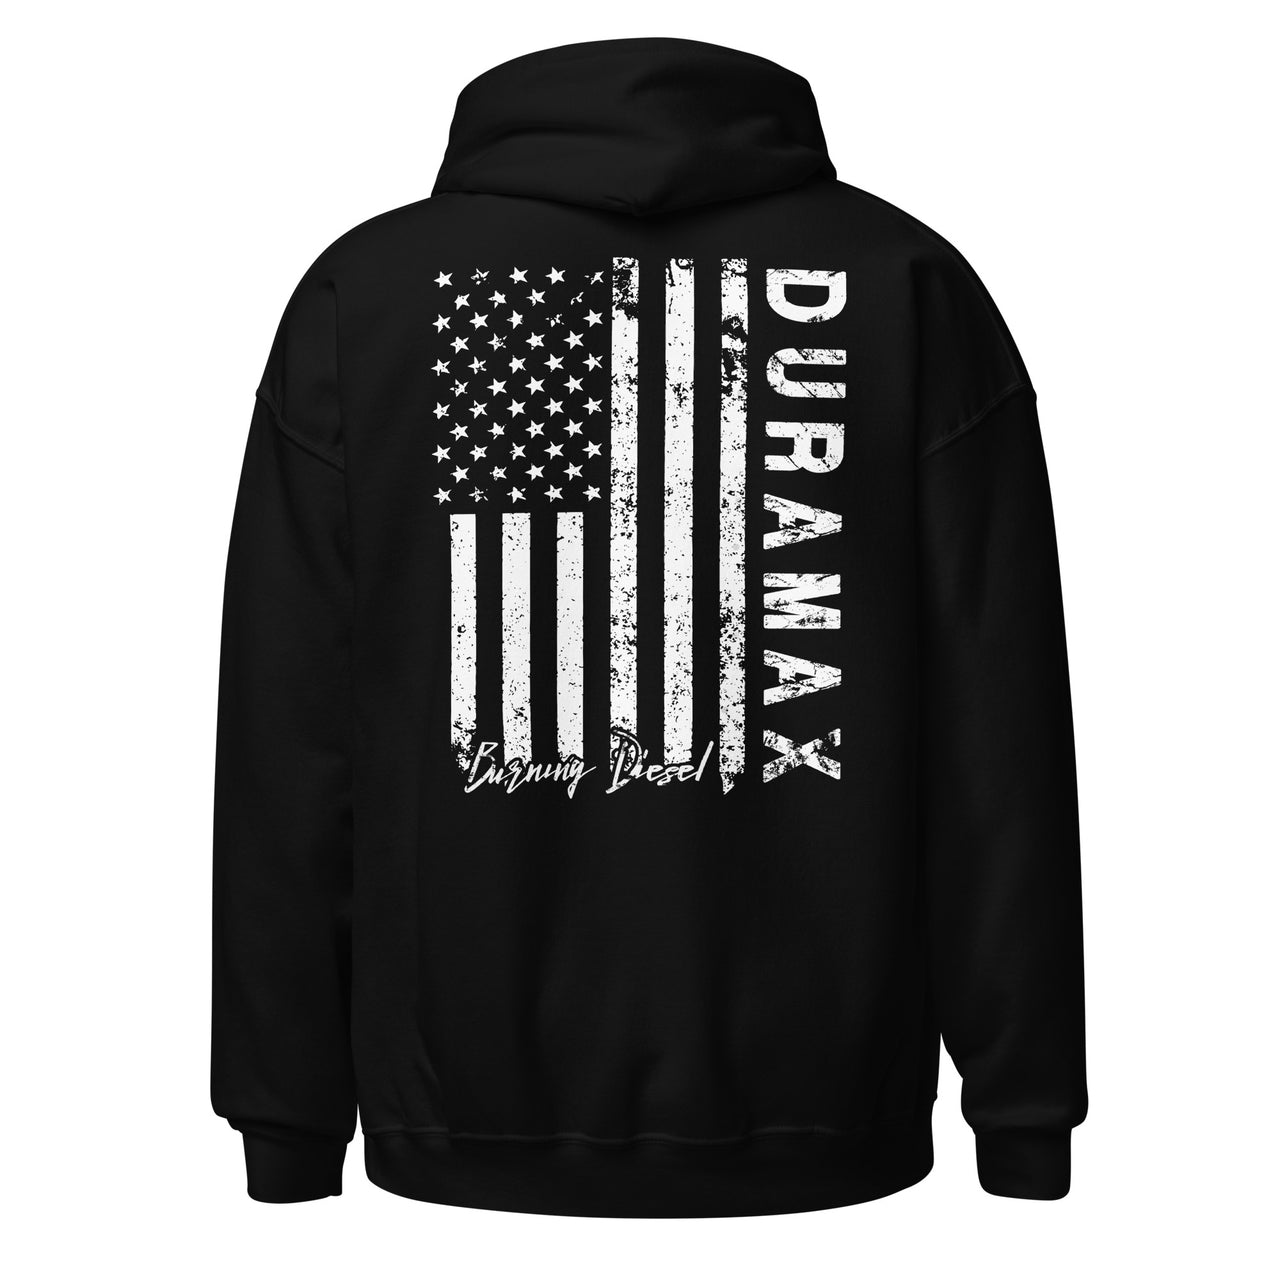 LZO 3.0 Duramax Hoodie Sweatshirt With American Flag Design back in black